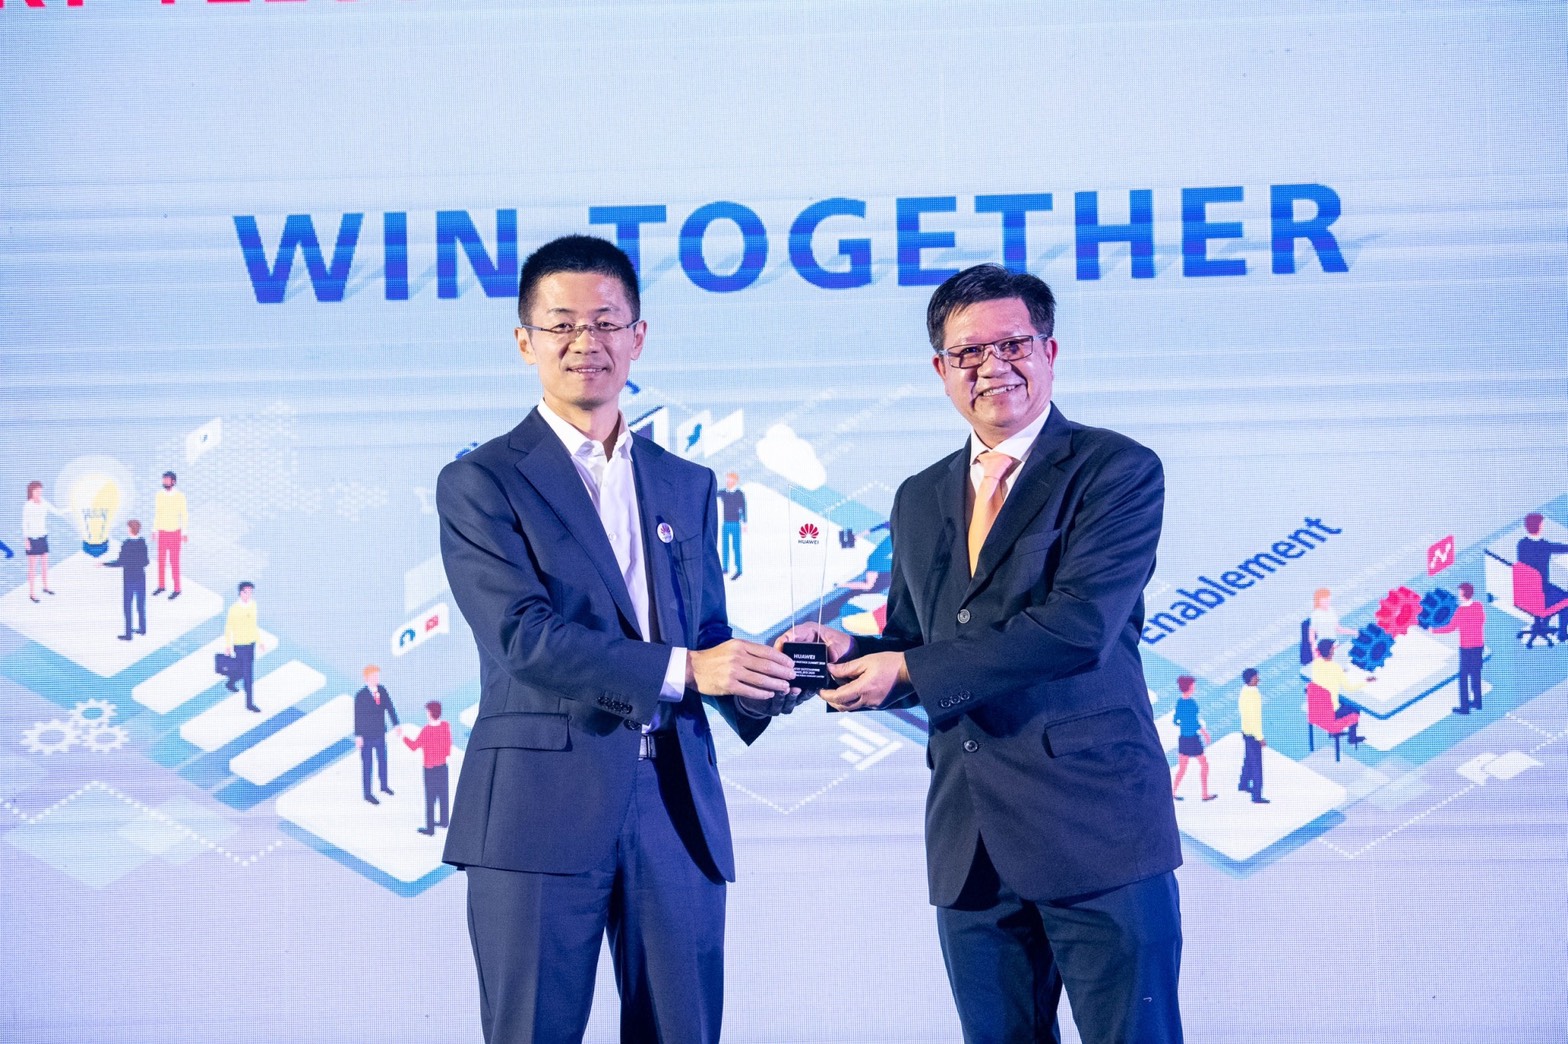 สามารถเทลคอม รับรางวัลยอดขายสูงสุดในกลุ่ม BankingIndustry ของ Huawei